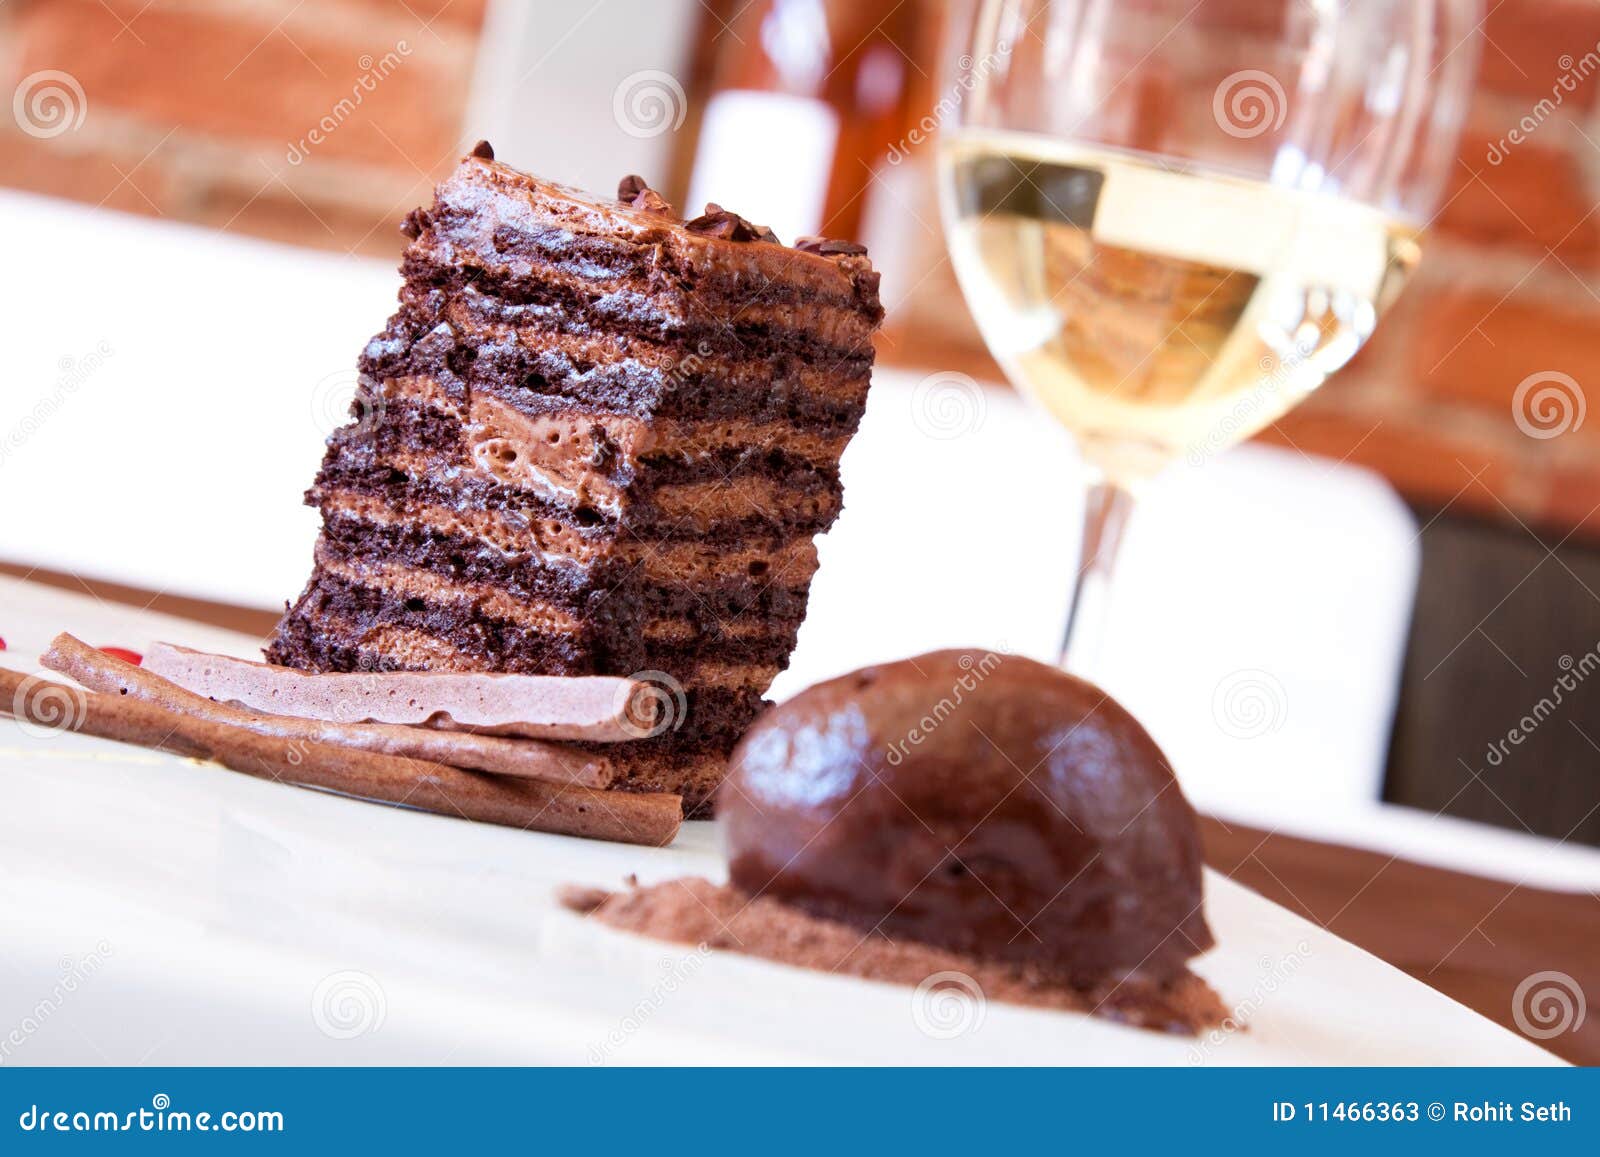 巧克力甜甜圈海绵蛋糕怎么做_巧克力甜甜圈海绵蛋糕的做法_泣哥儿的厨房故事_豆果美食